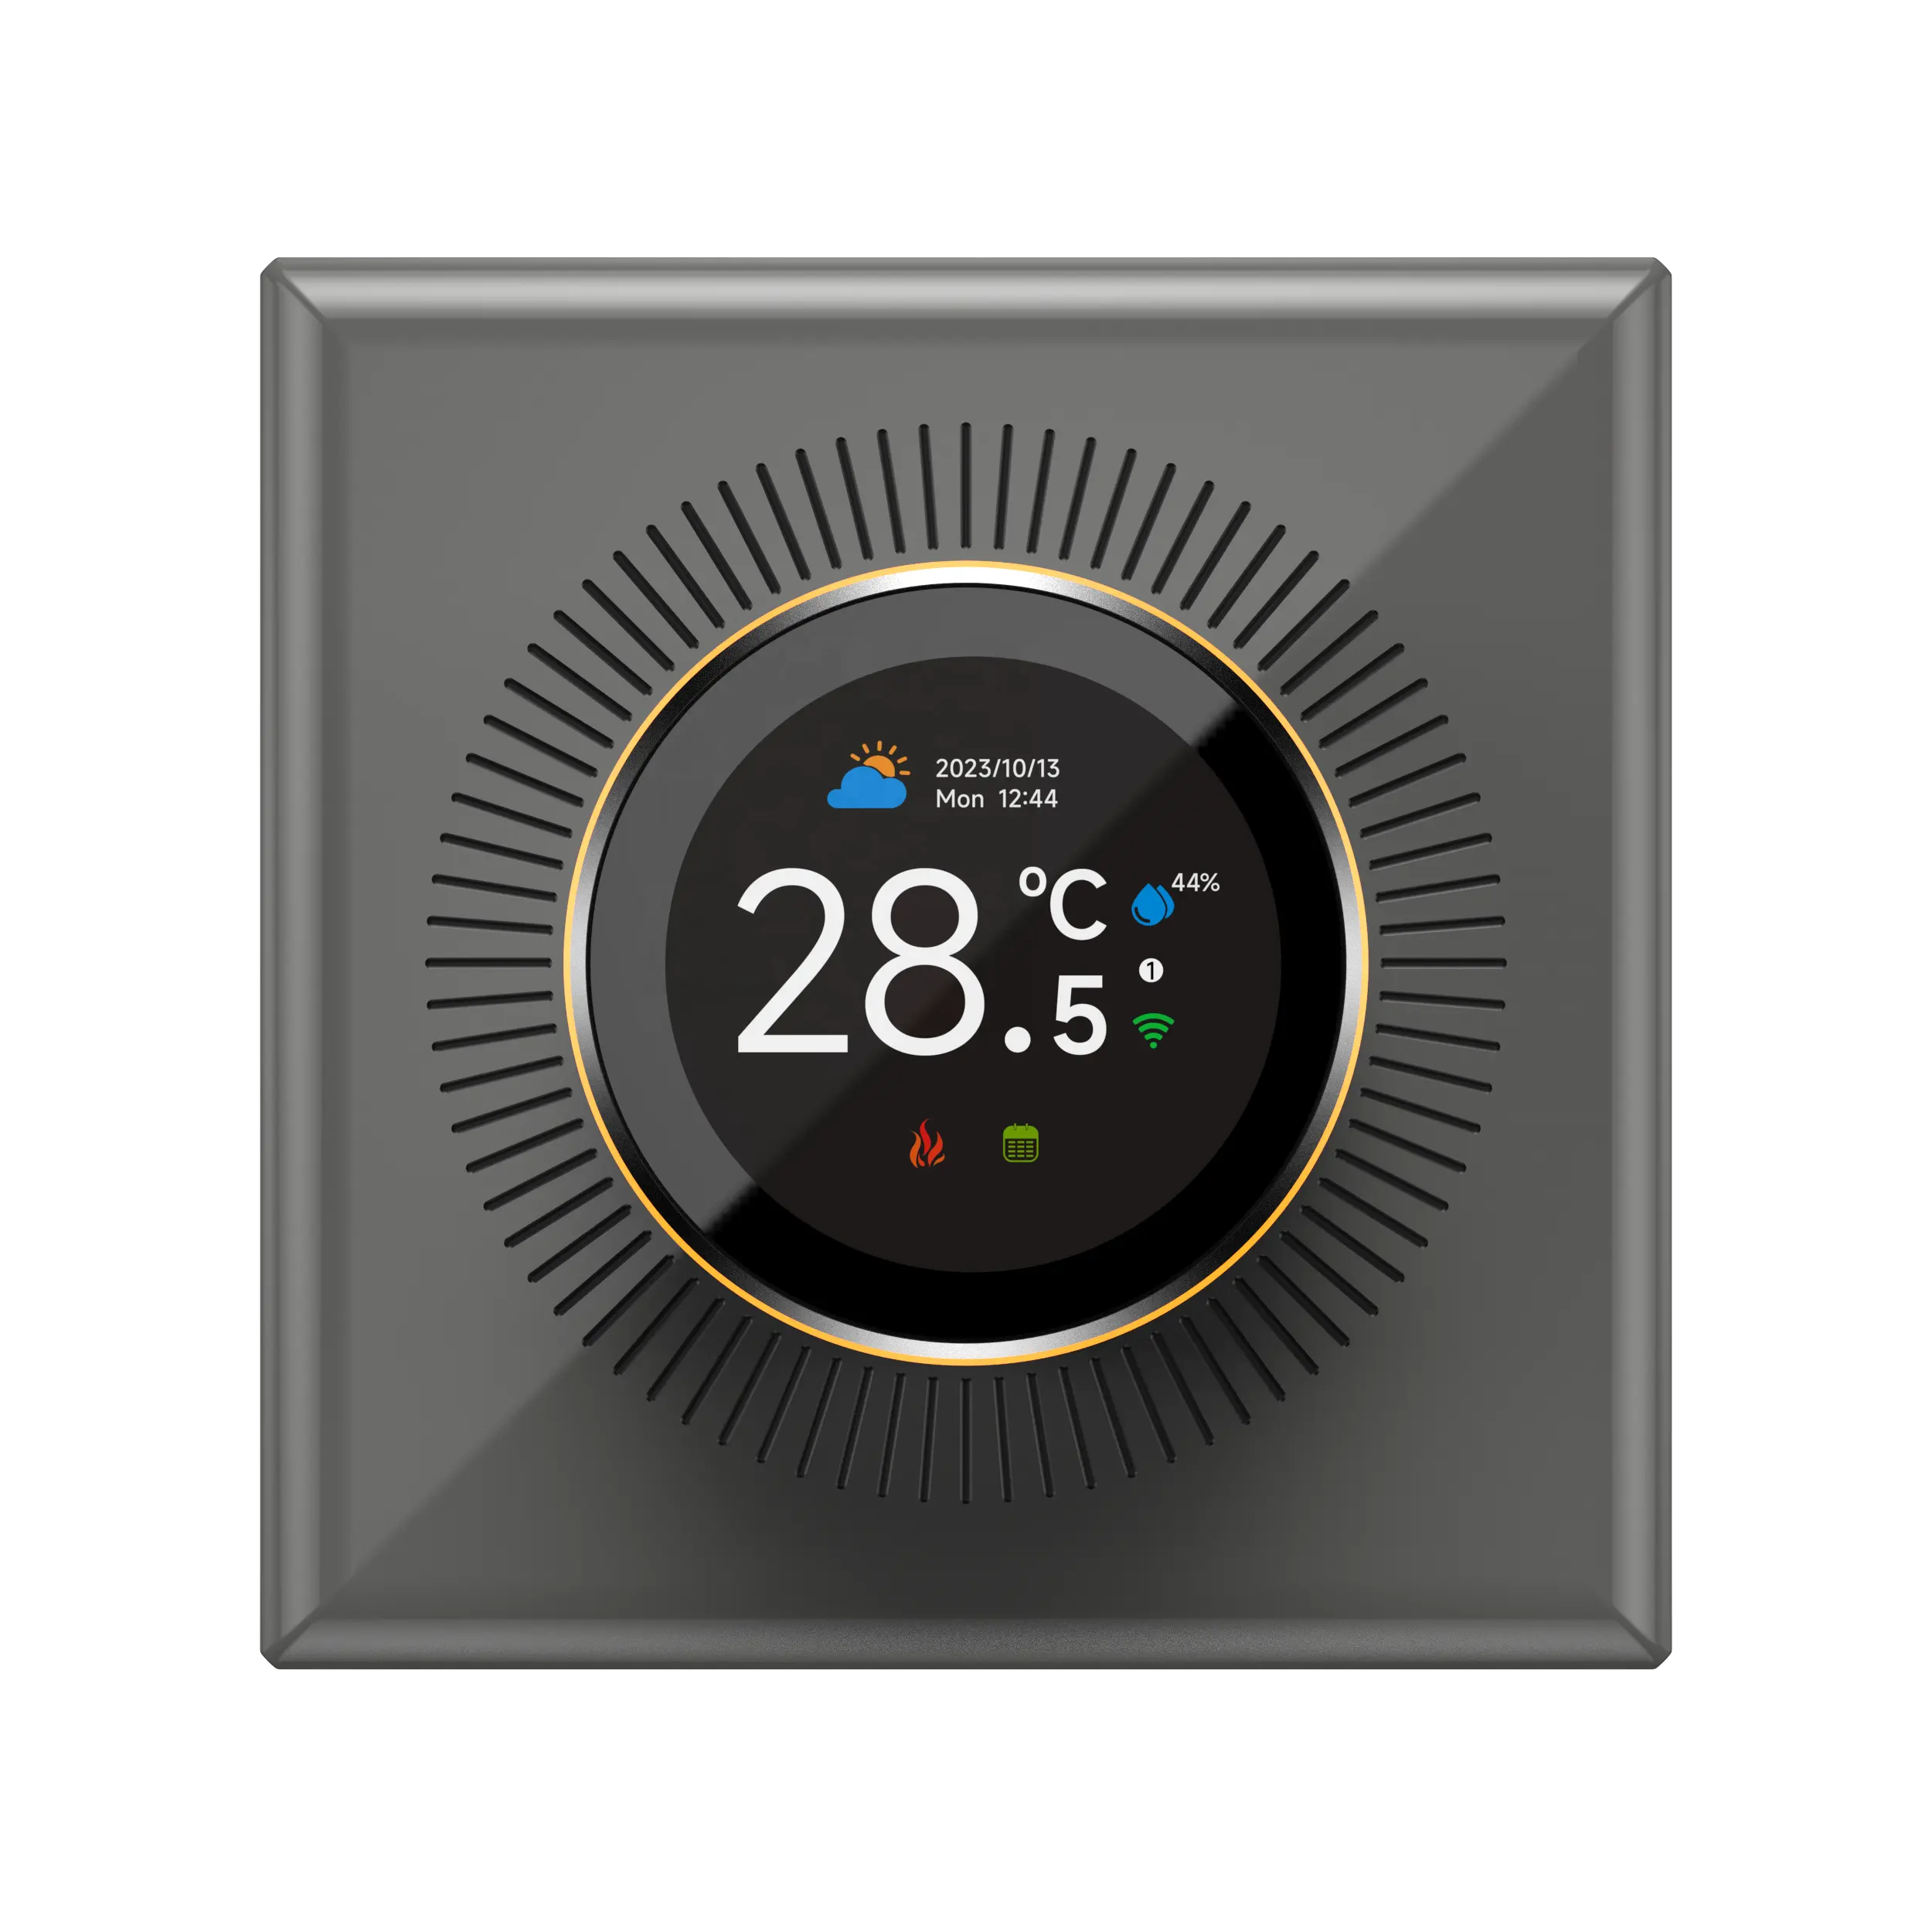 Controlador de temperatura ambiente Tuya Smart Life, termostato de perilla TFT de Diseño Europeo con función de calefacción de Control remoto por voz Alexa